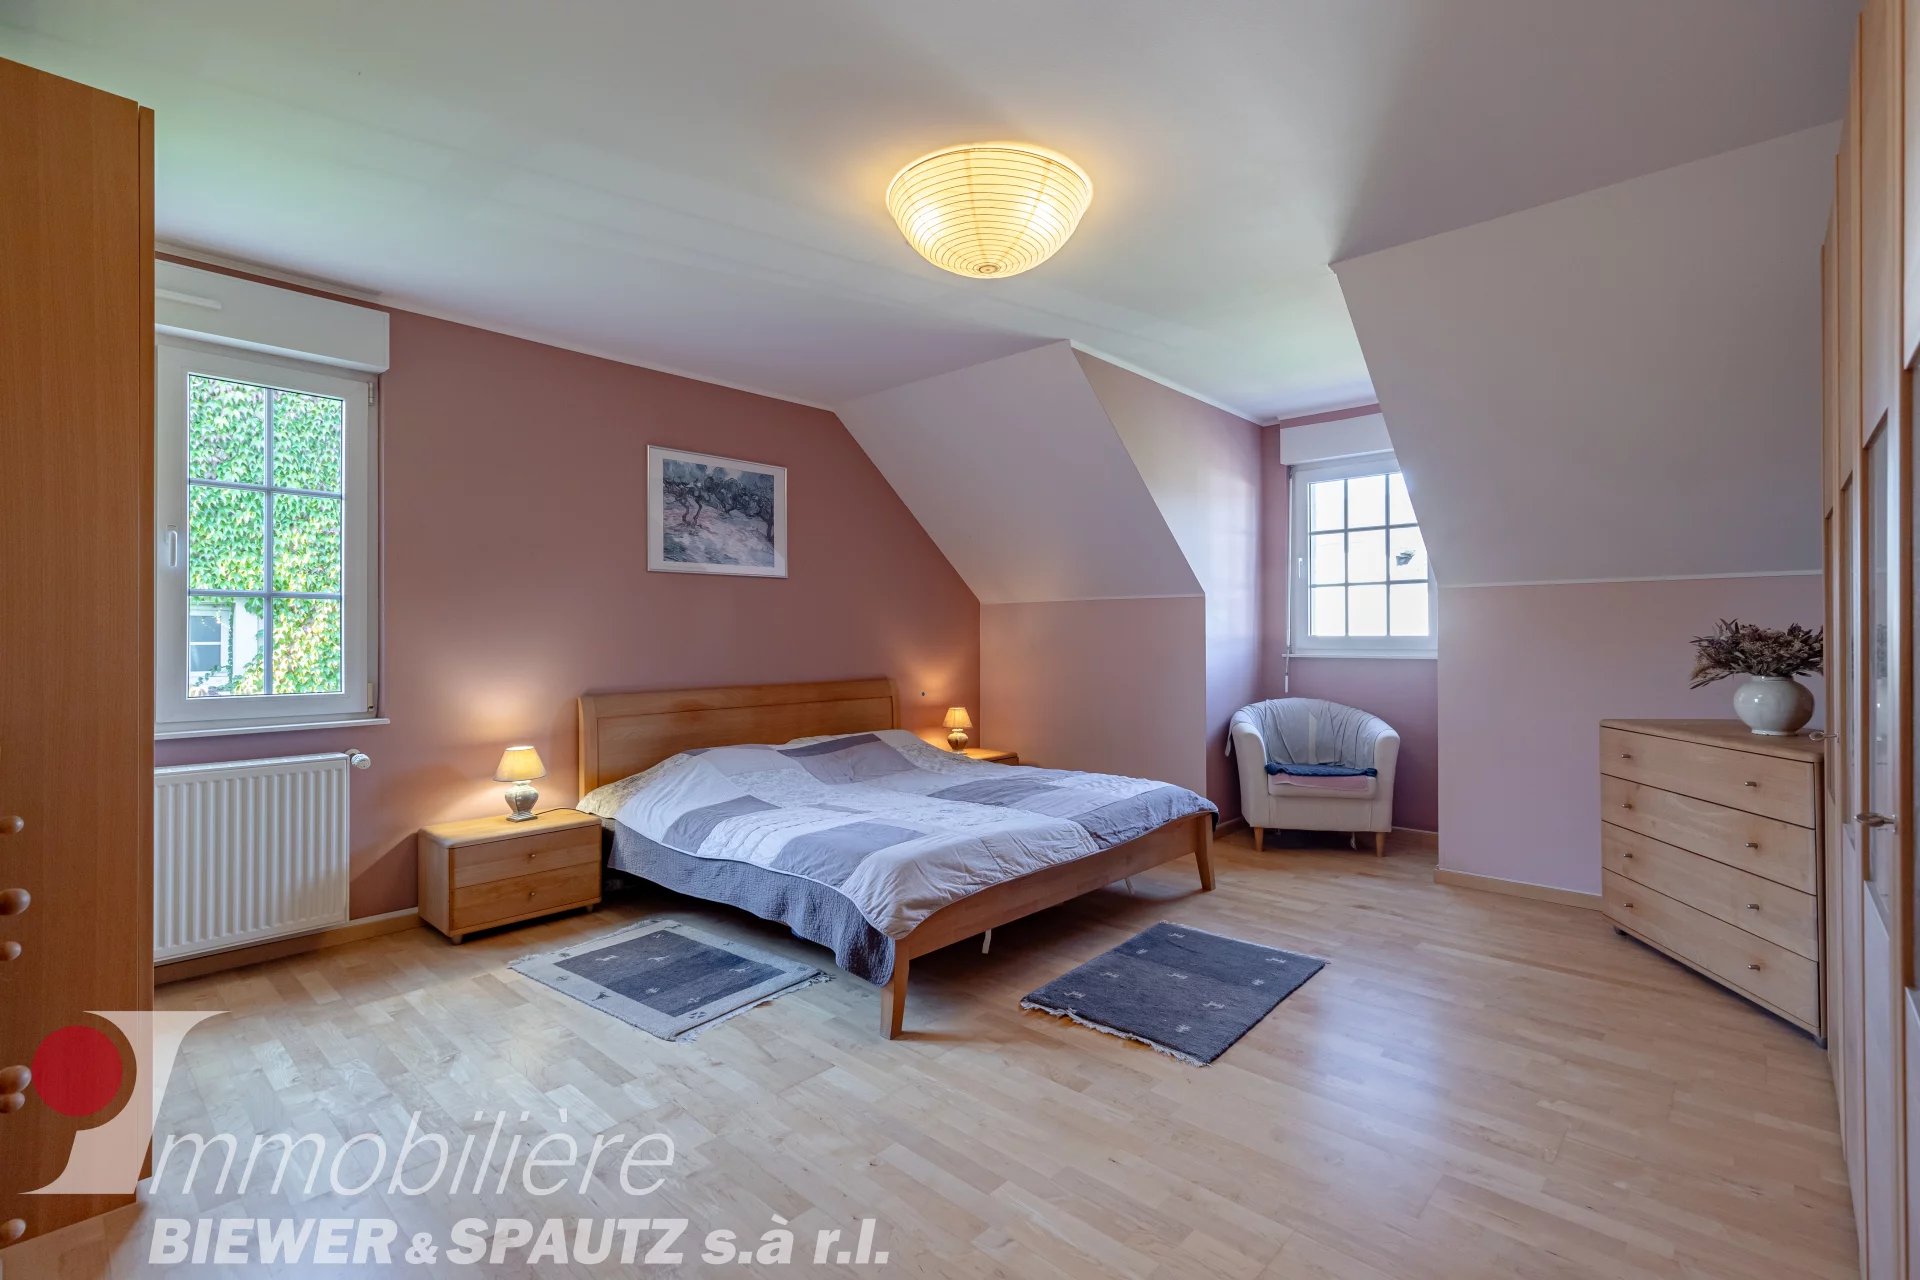 VENDUE - Maison individuelle avec 4 chambres à coucher à Berdorf